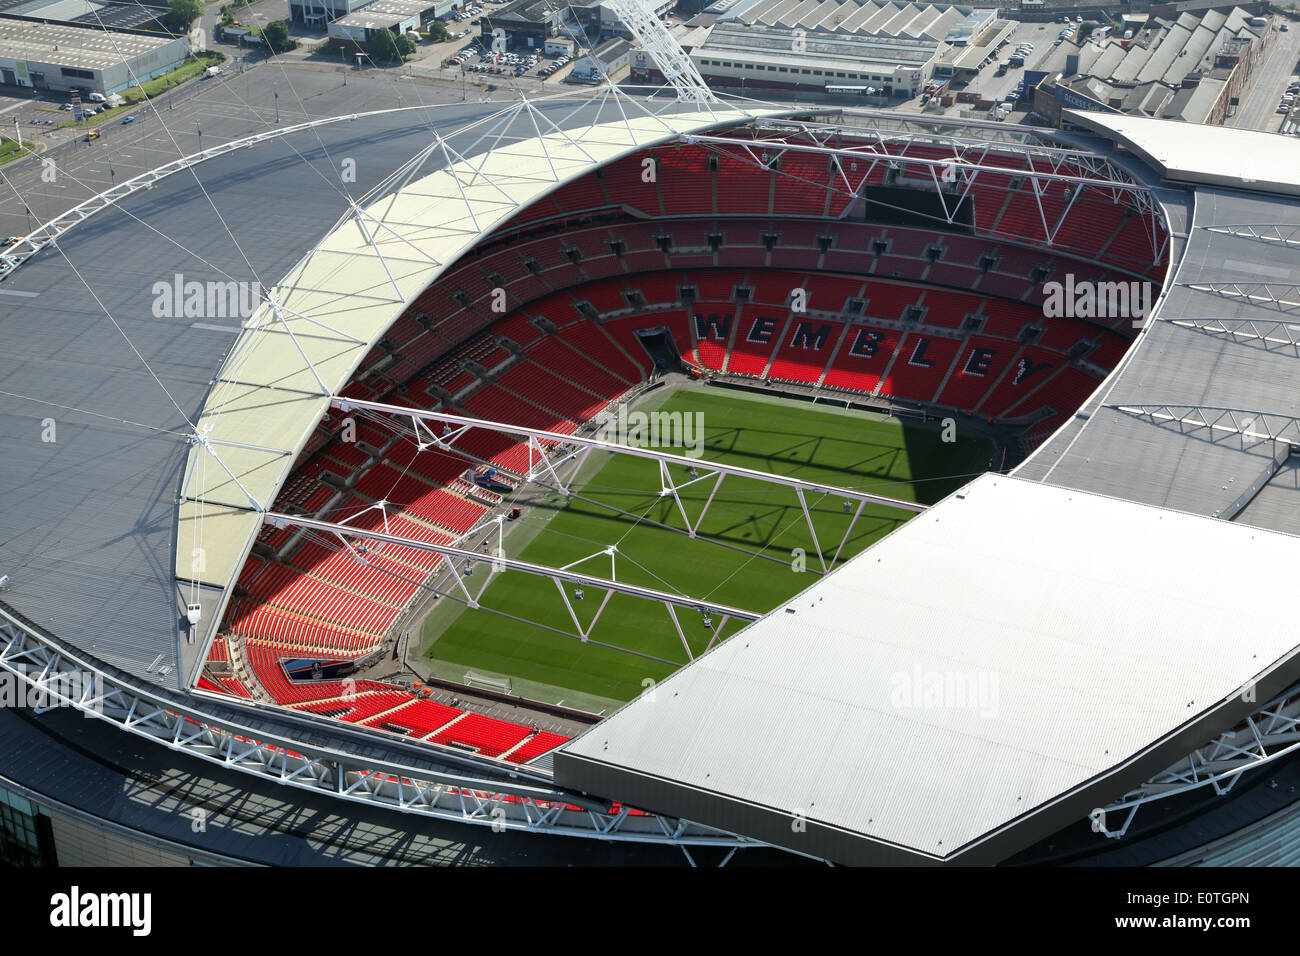 Vue aérienne du stade de Wembley, Londres, UK Banque D'Images